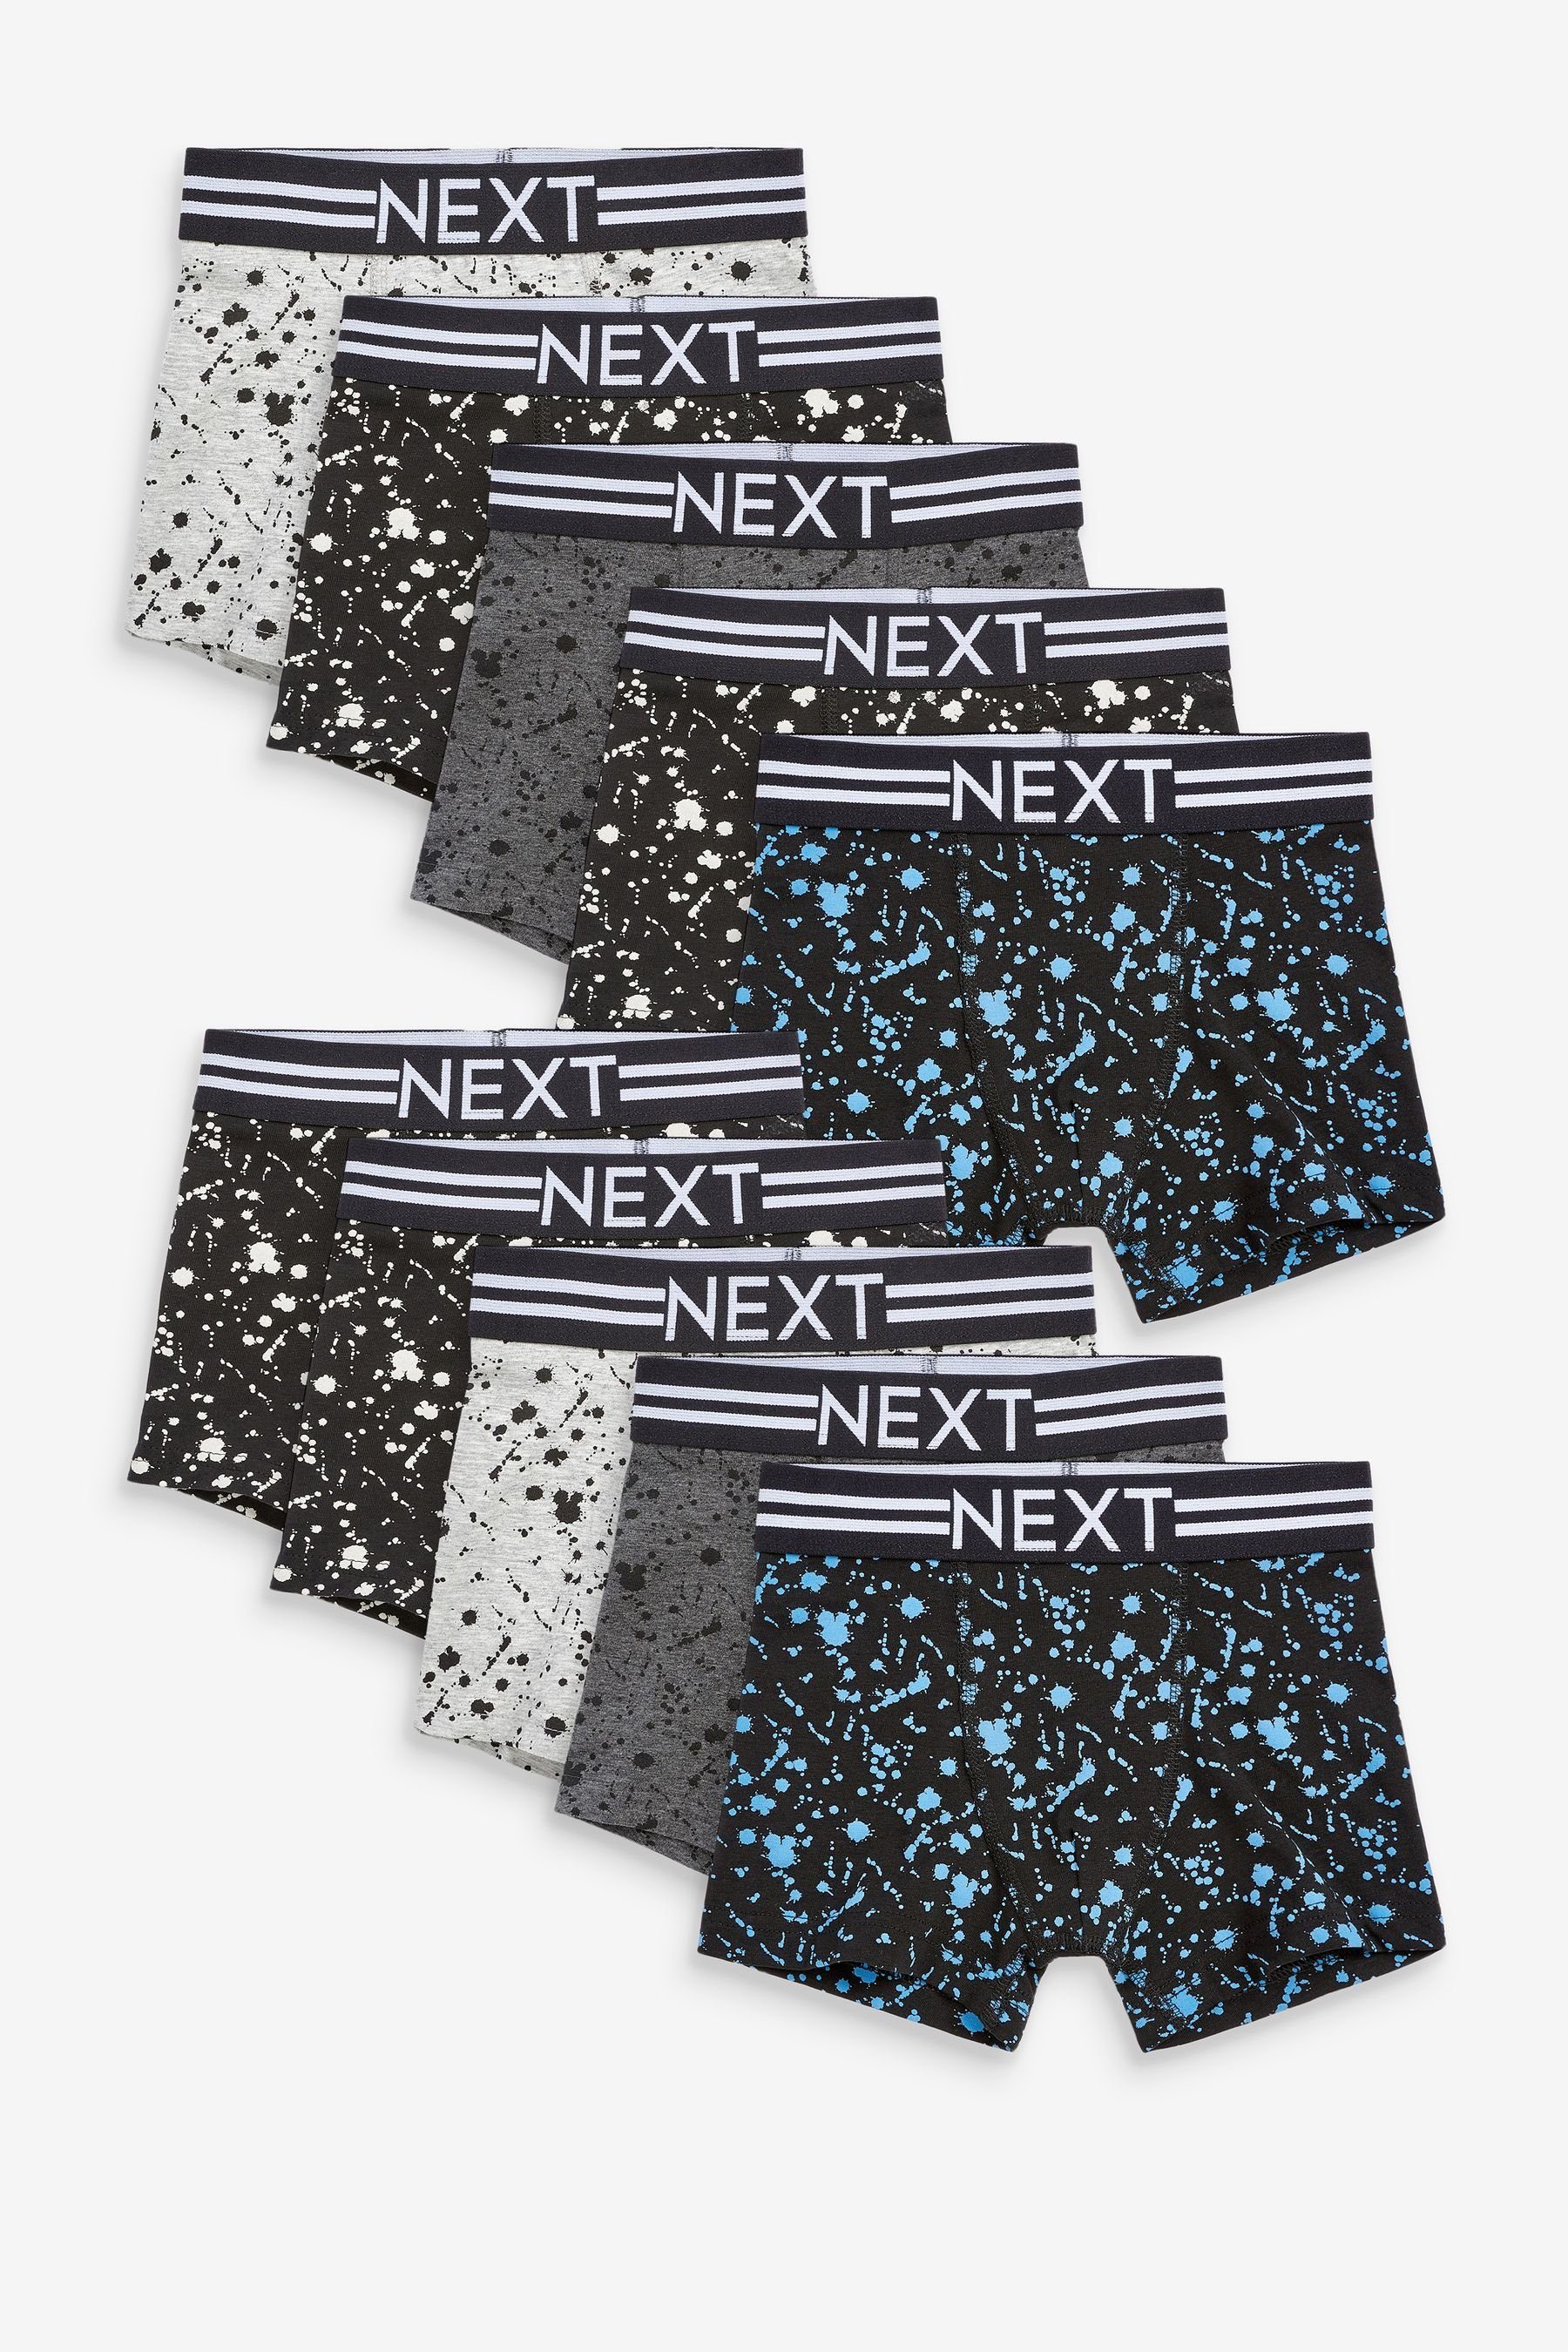 Next Trunk Unterhosen im 10er-Pack (10-St) Monochrome Splat